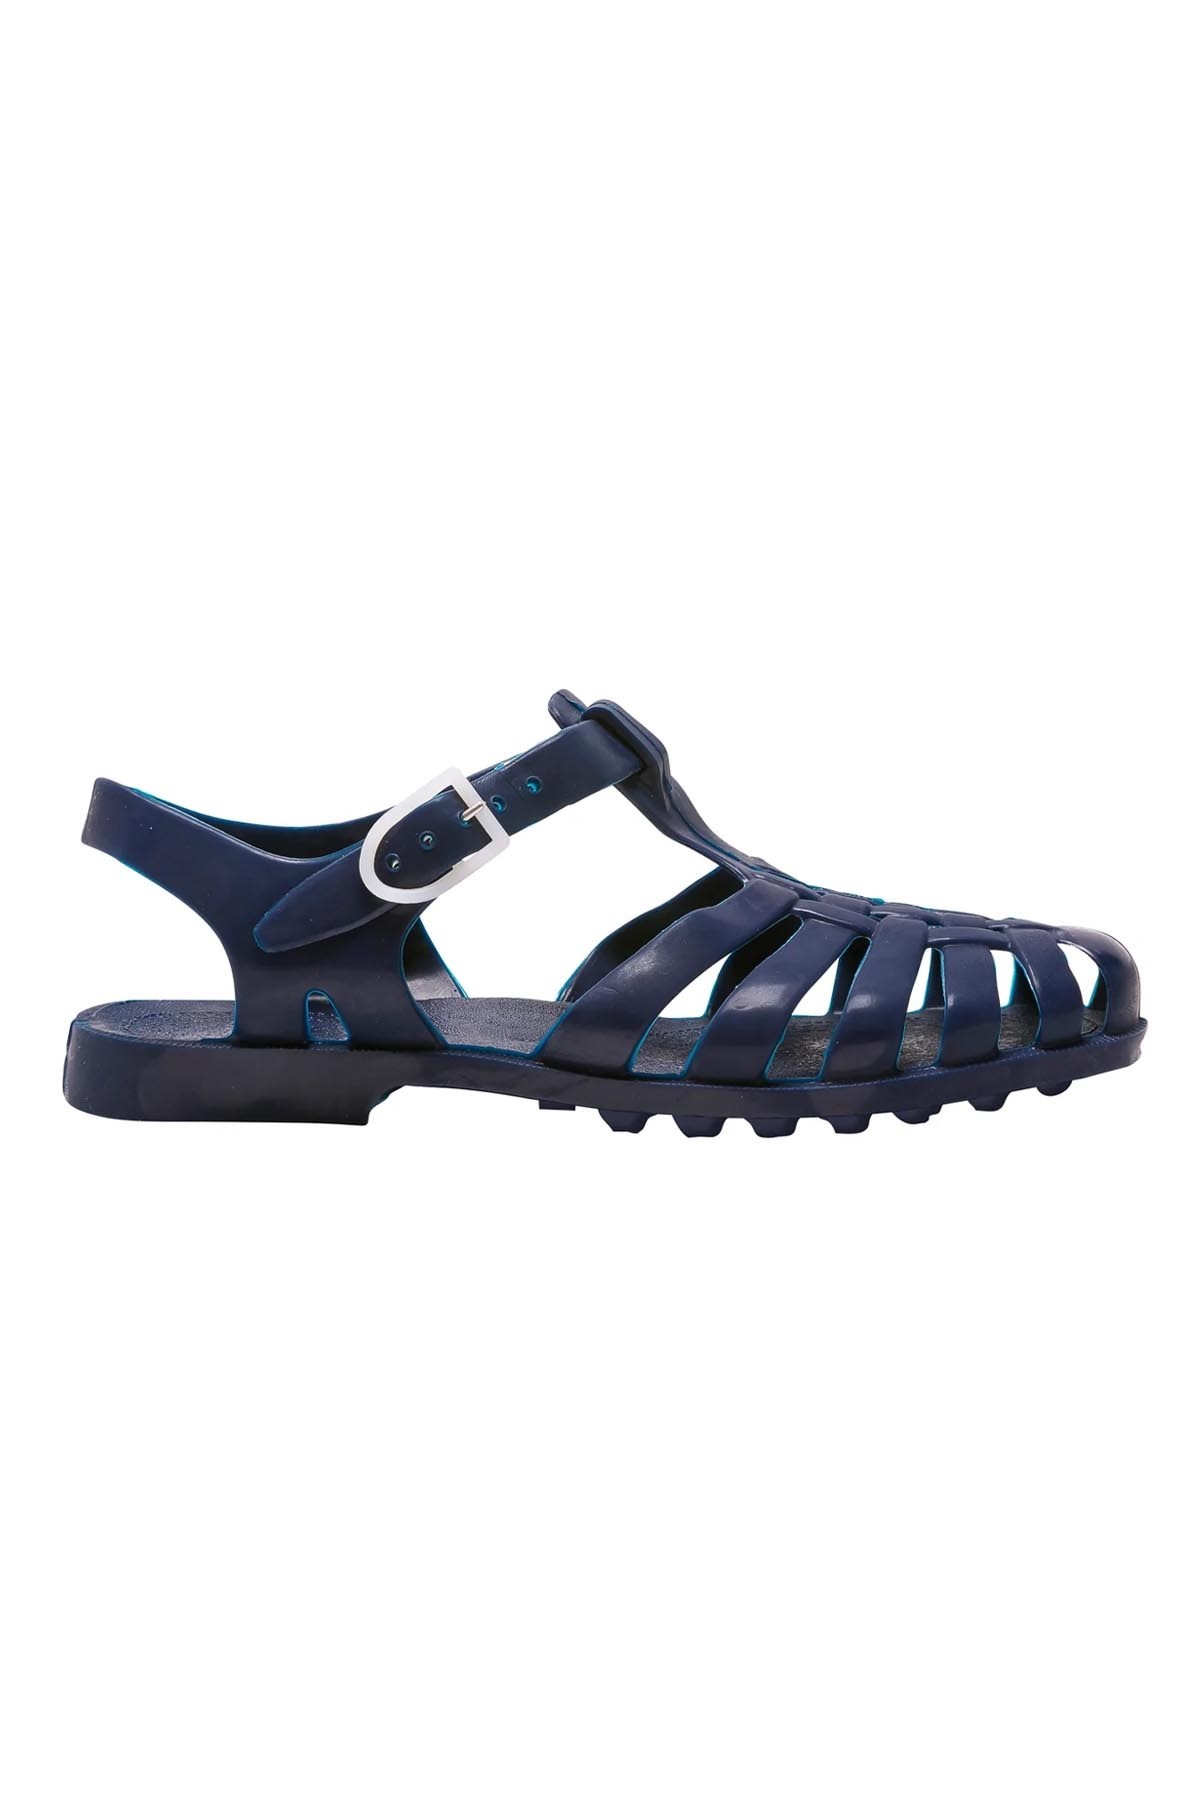 Meduse Sun Yetişkin Sandalet Marine No: 36-38